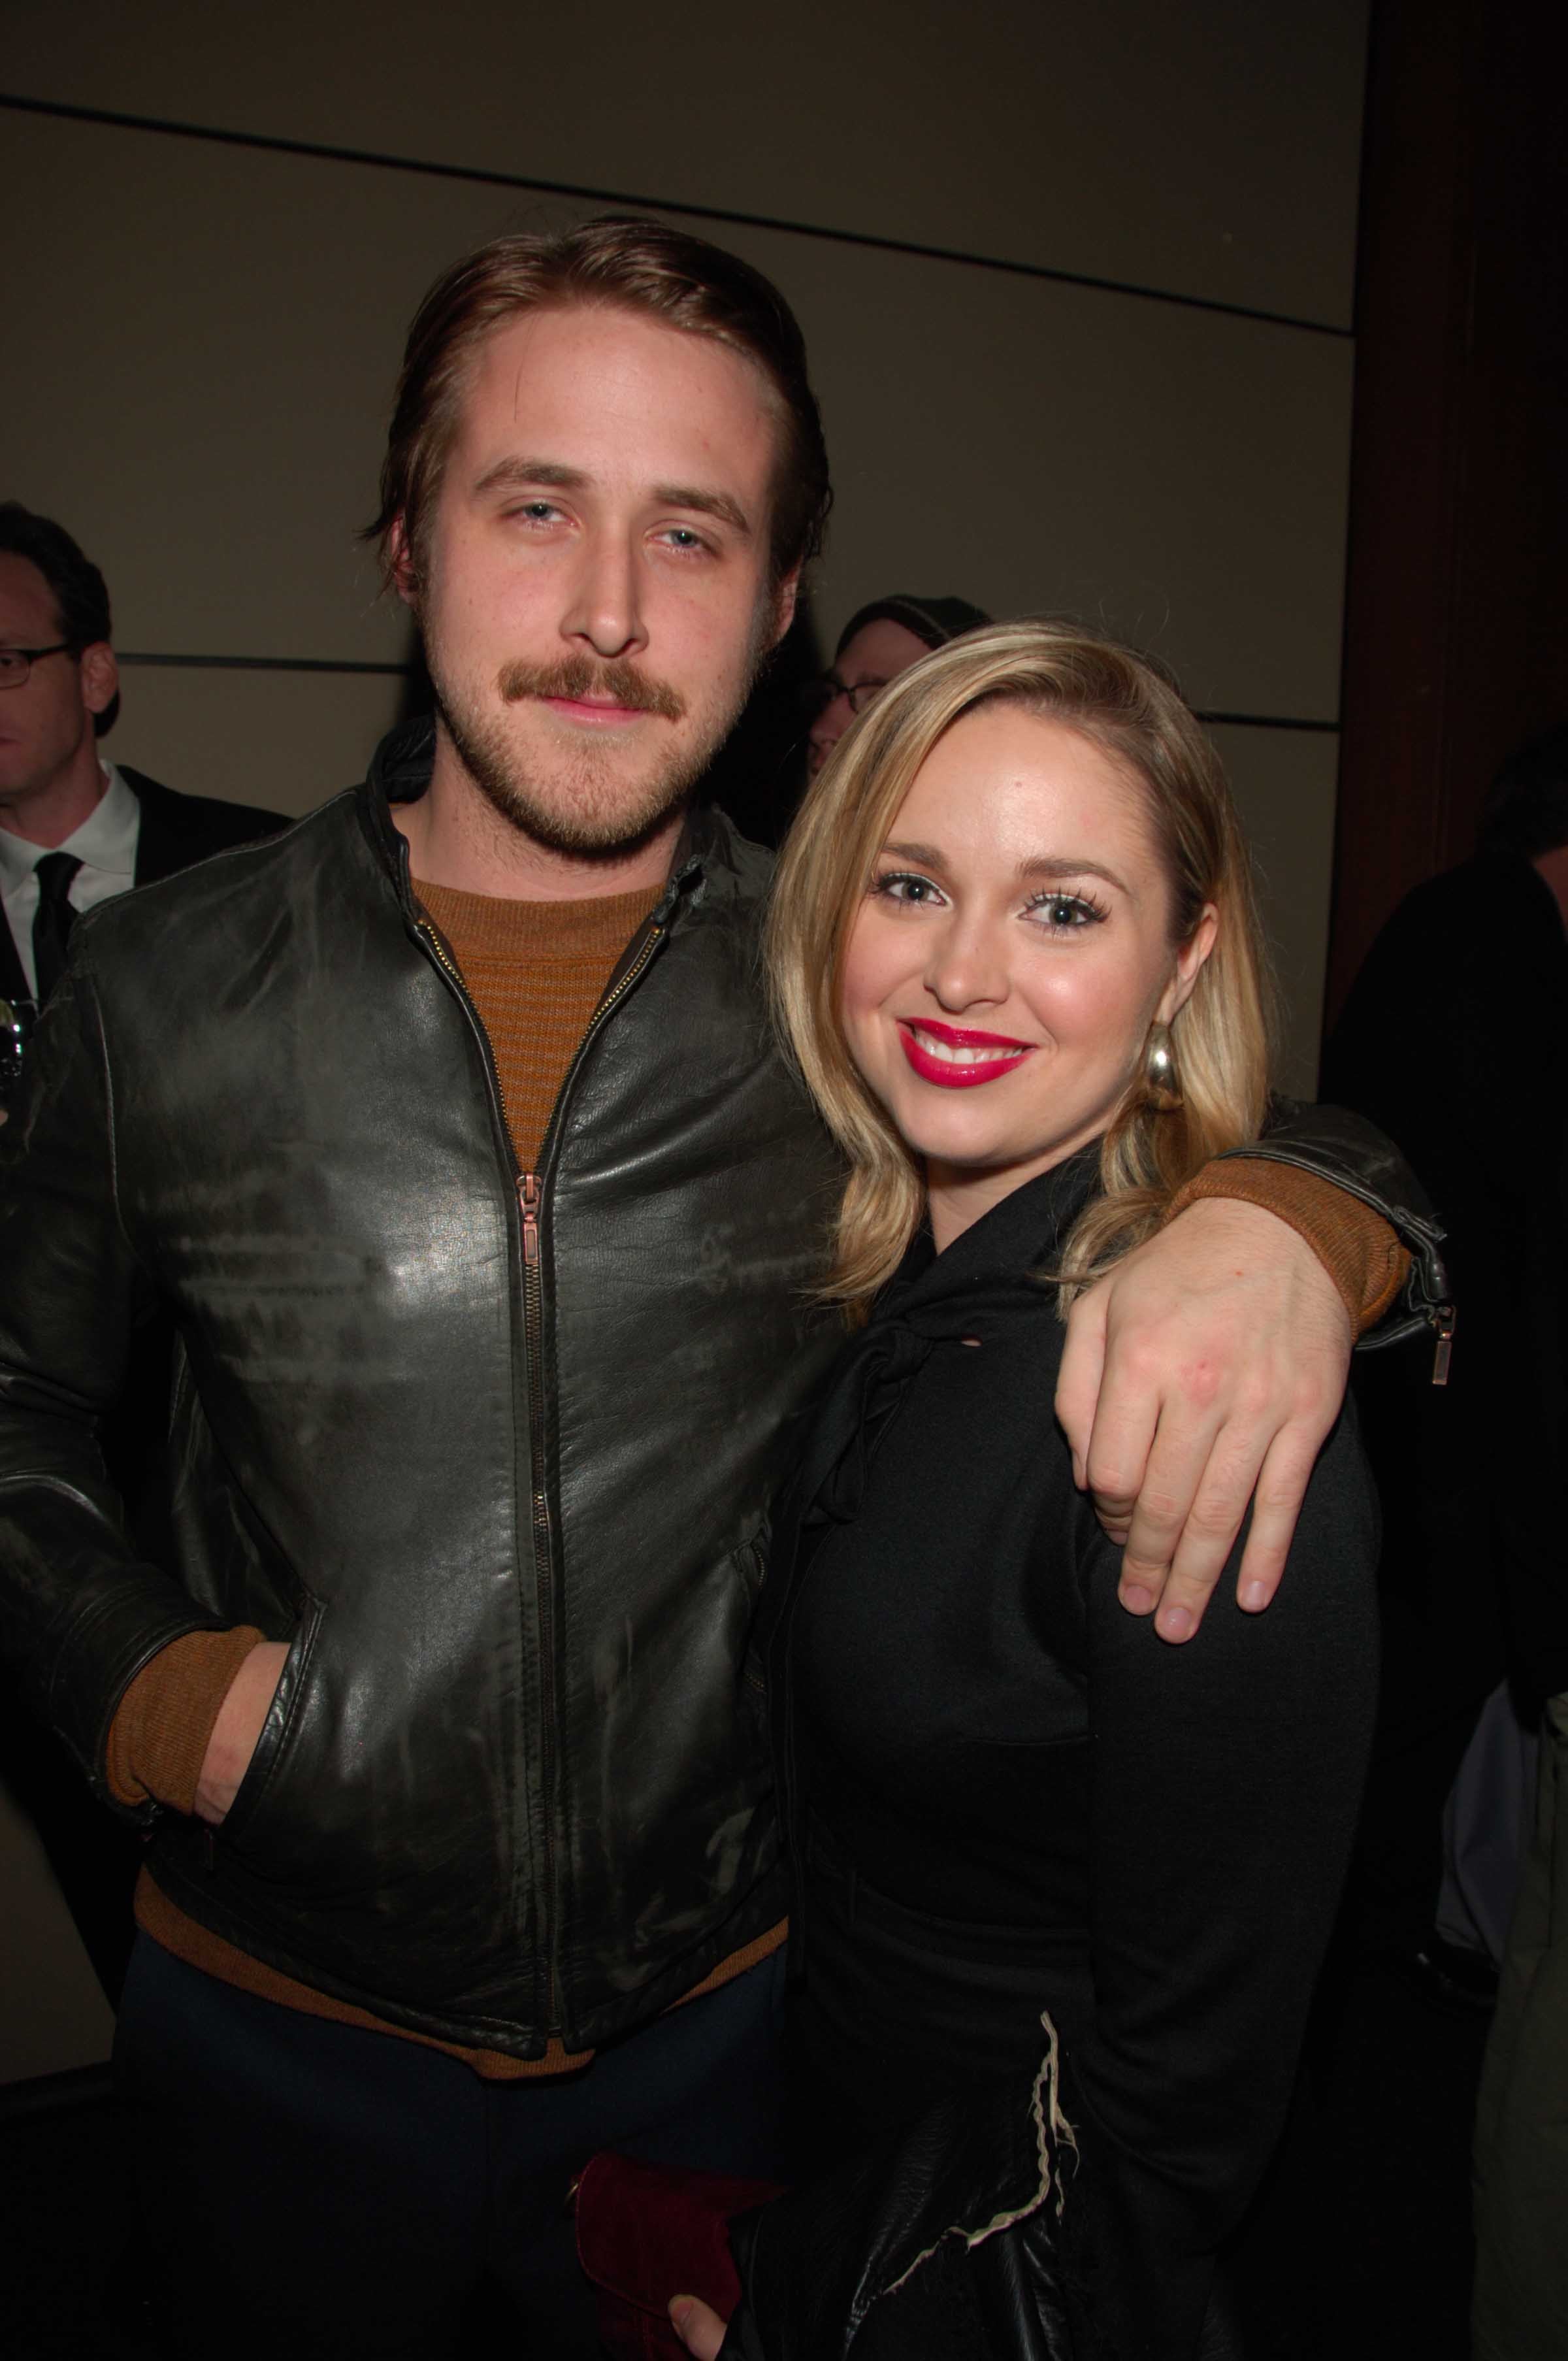 Ryan Gosling et Mandi Gosling (sœur) à New York City le 29 novembre 2006 | Source : Getty Images